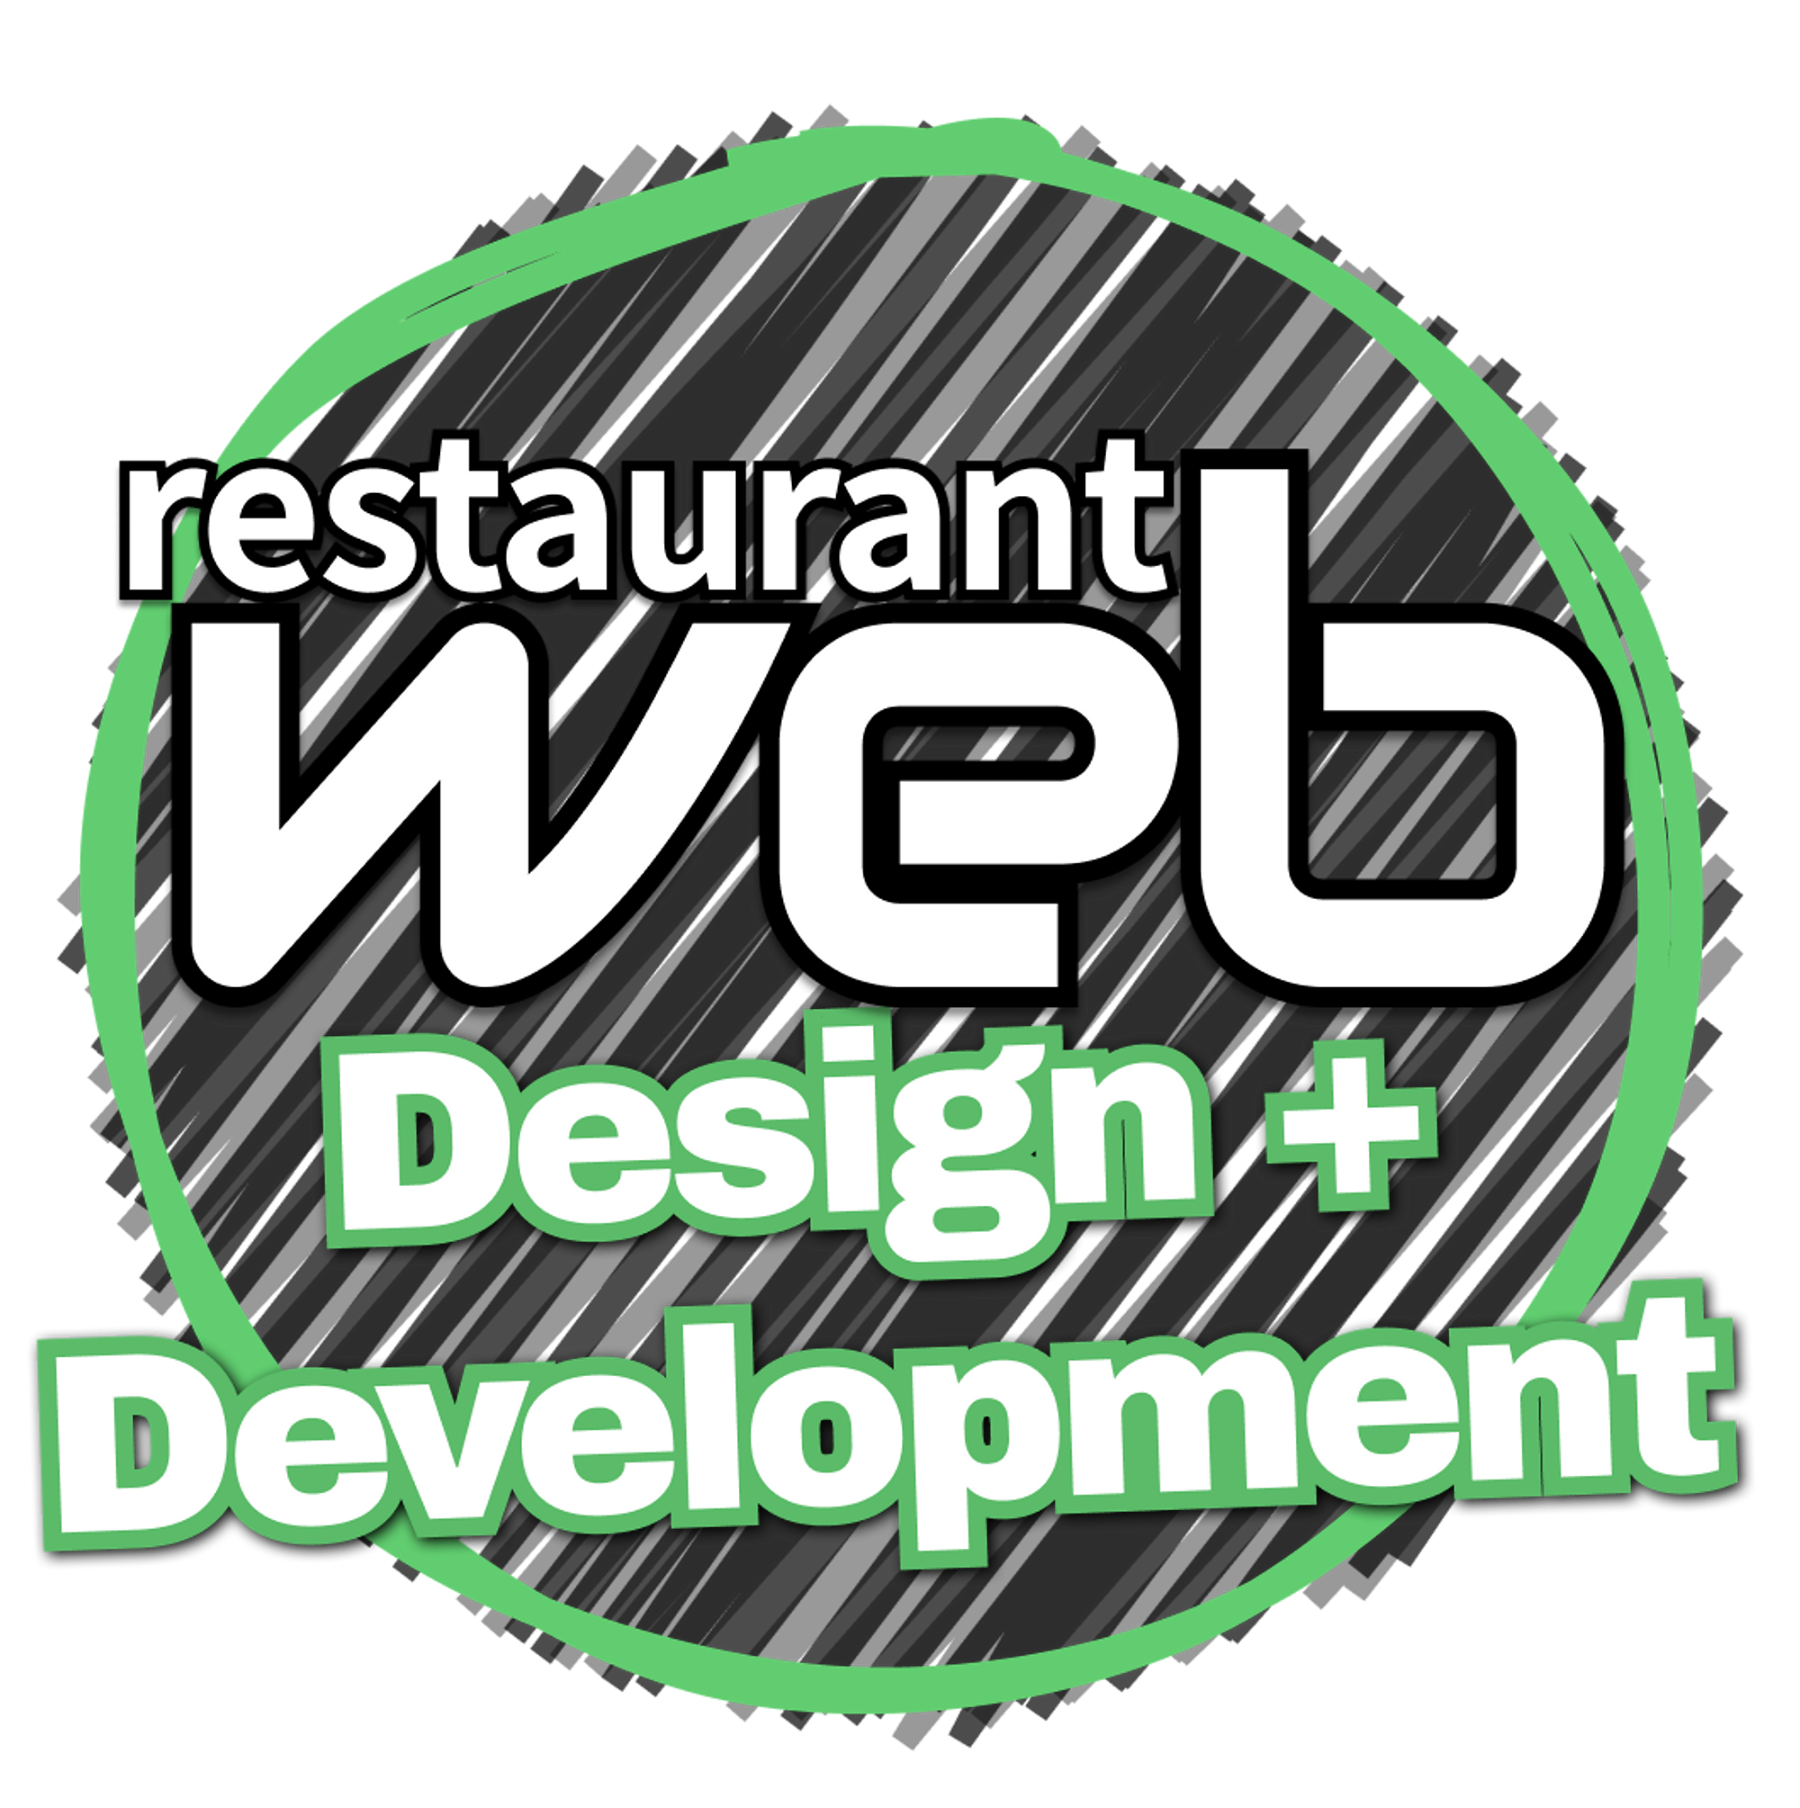 à§²Web Design-Develop: Service